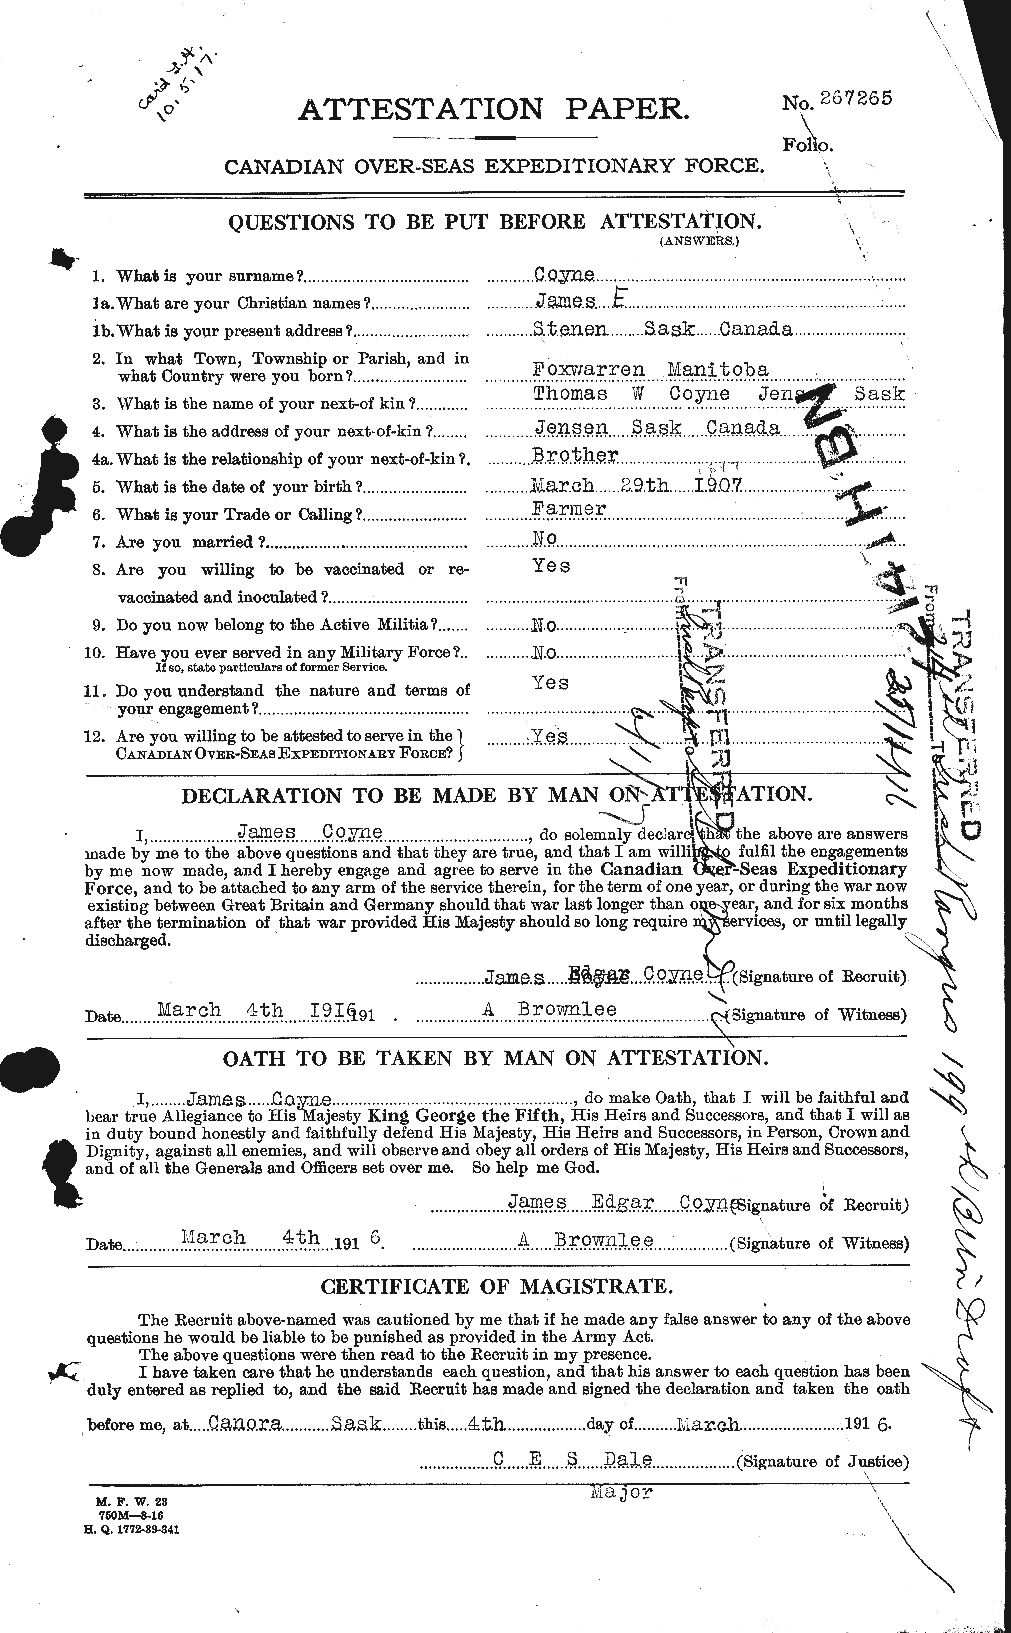 Dossiers du Personnel de la Première Guerre mondiale - CEC 062323a